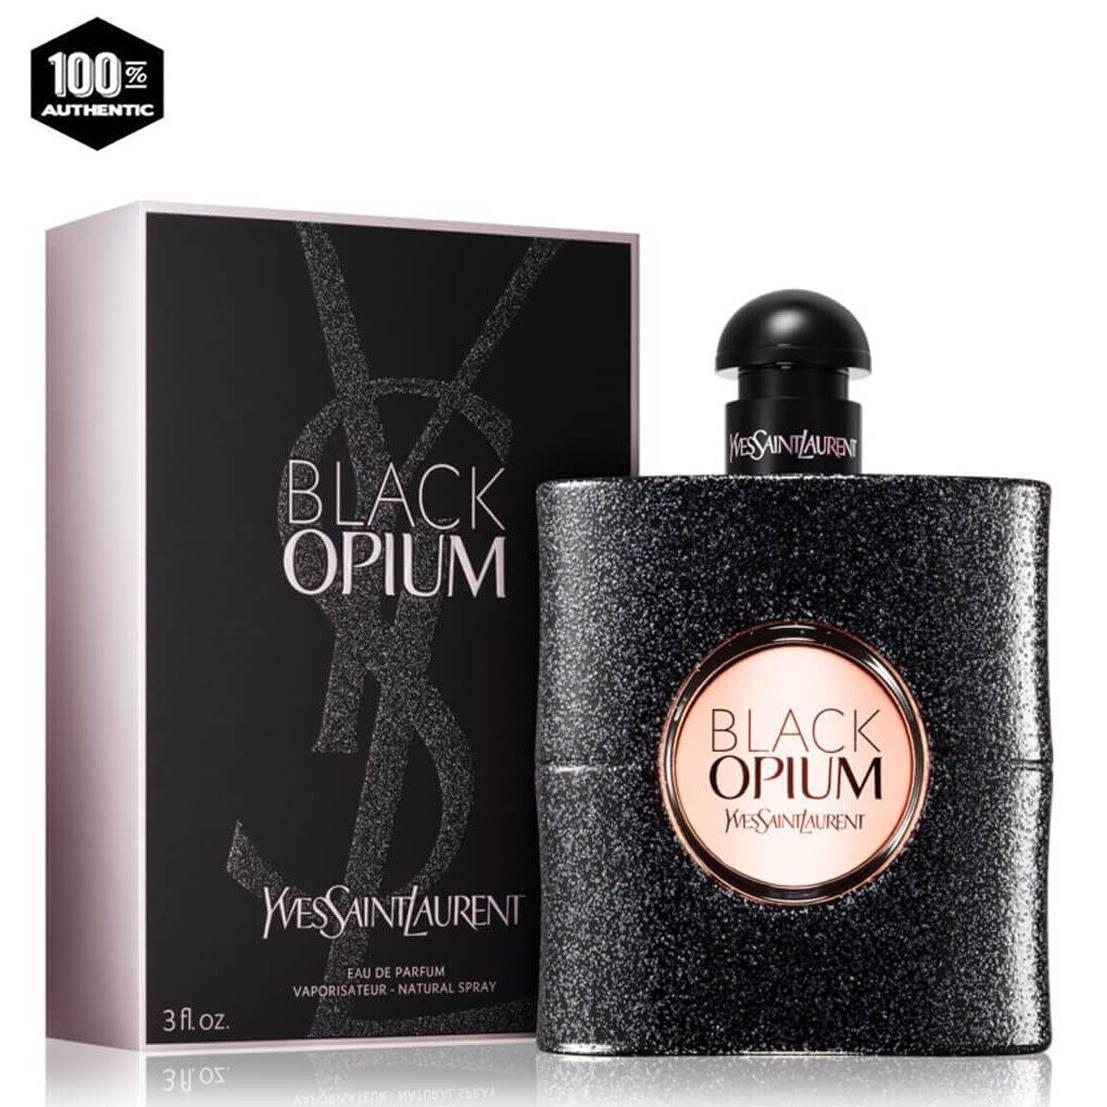 Black Opium by Yves Saint Laurent 3.0 oz / 90 ml Edp Spray For Women